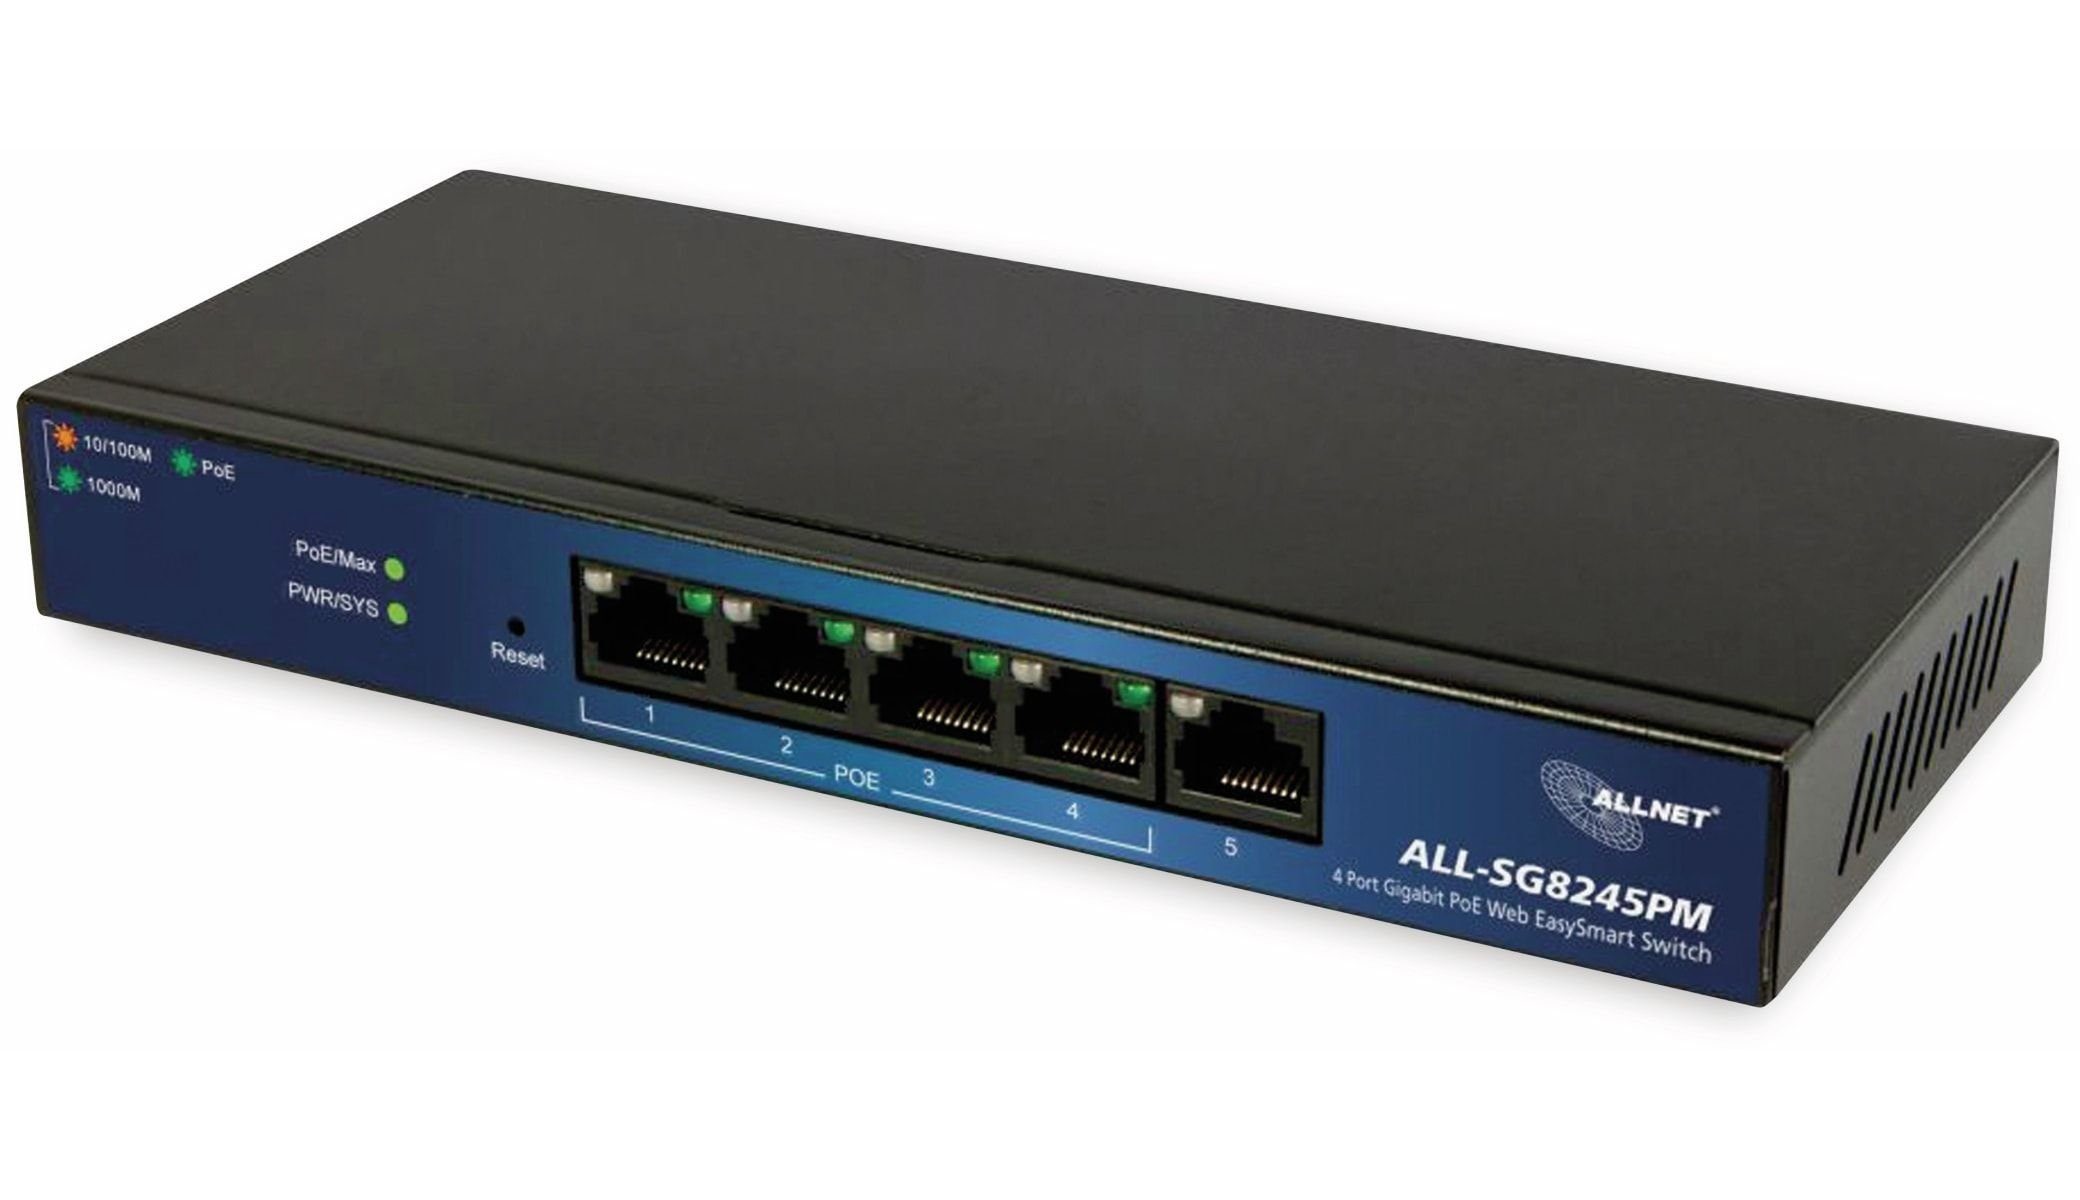 Allnet ALLNET PoE managed, Netzwerk-Switch ALL-SG8245PM, Switch 5-Port